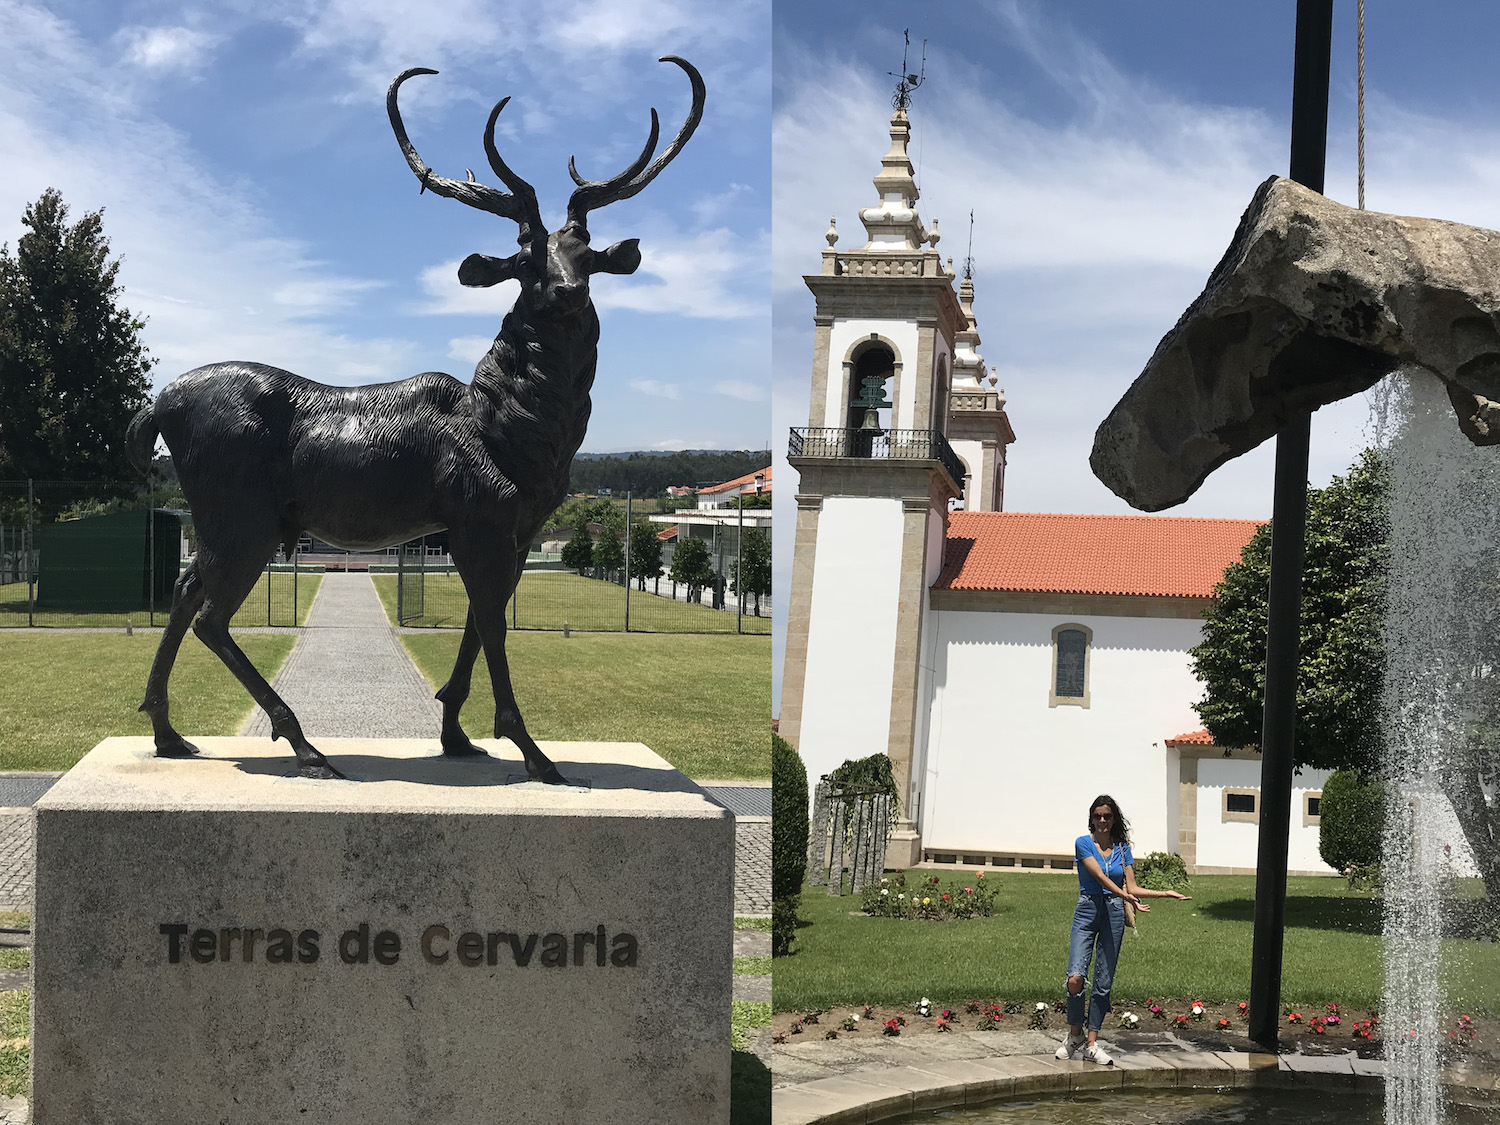 Vila Nova de Cerveira – Terras de Cervaria